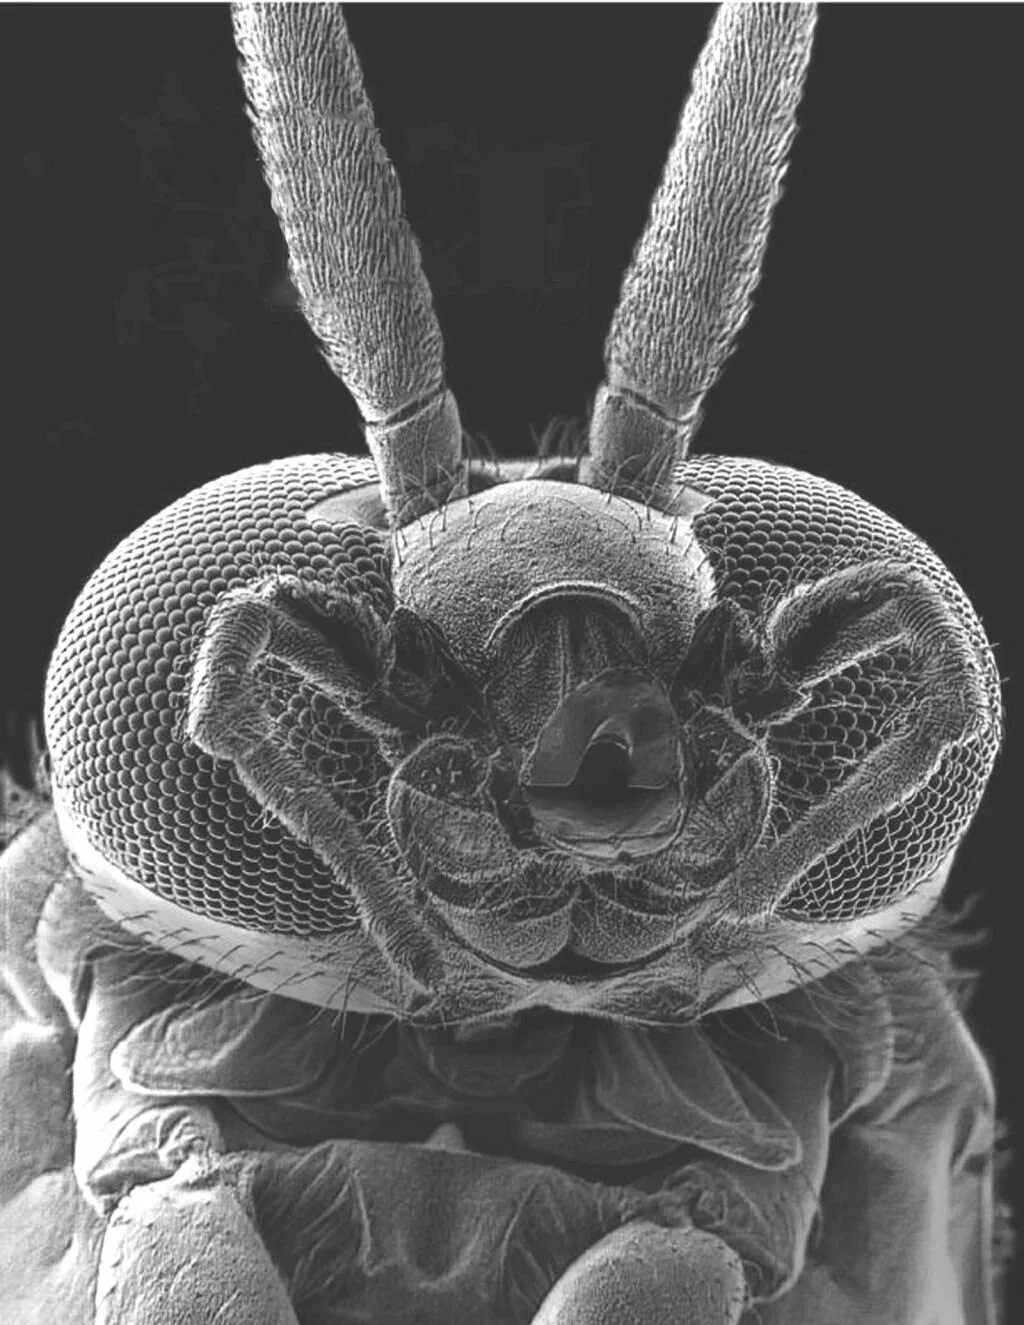 Мошка под микроскопом фото. Мошка гнус под микроскопом. Мокрец мошка под микроскопом. Зубы мошки под микроскопом. Астраханская мошка под микроскопом.